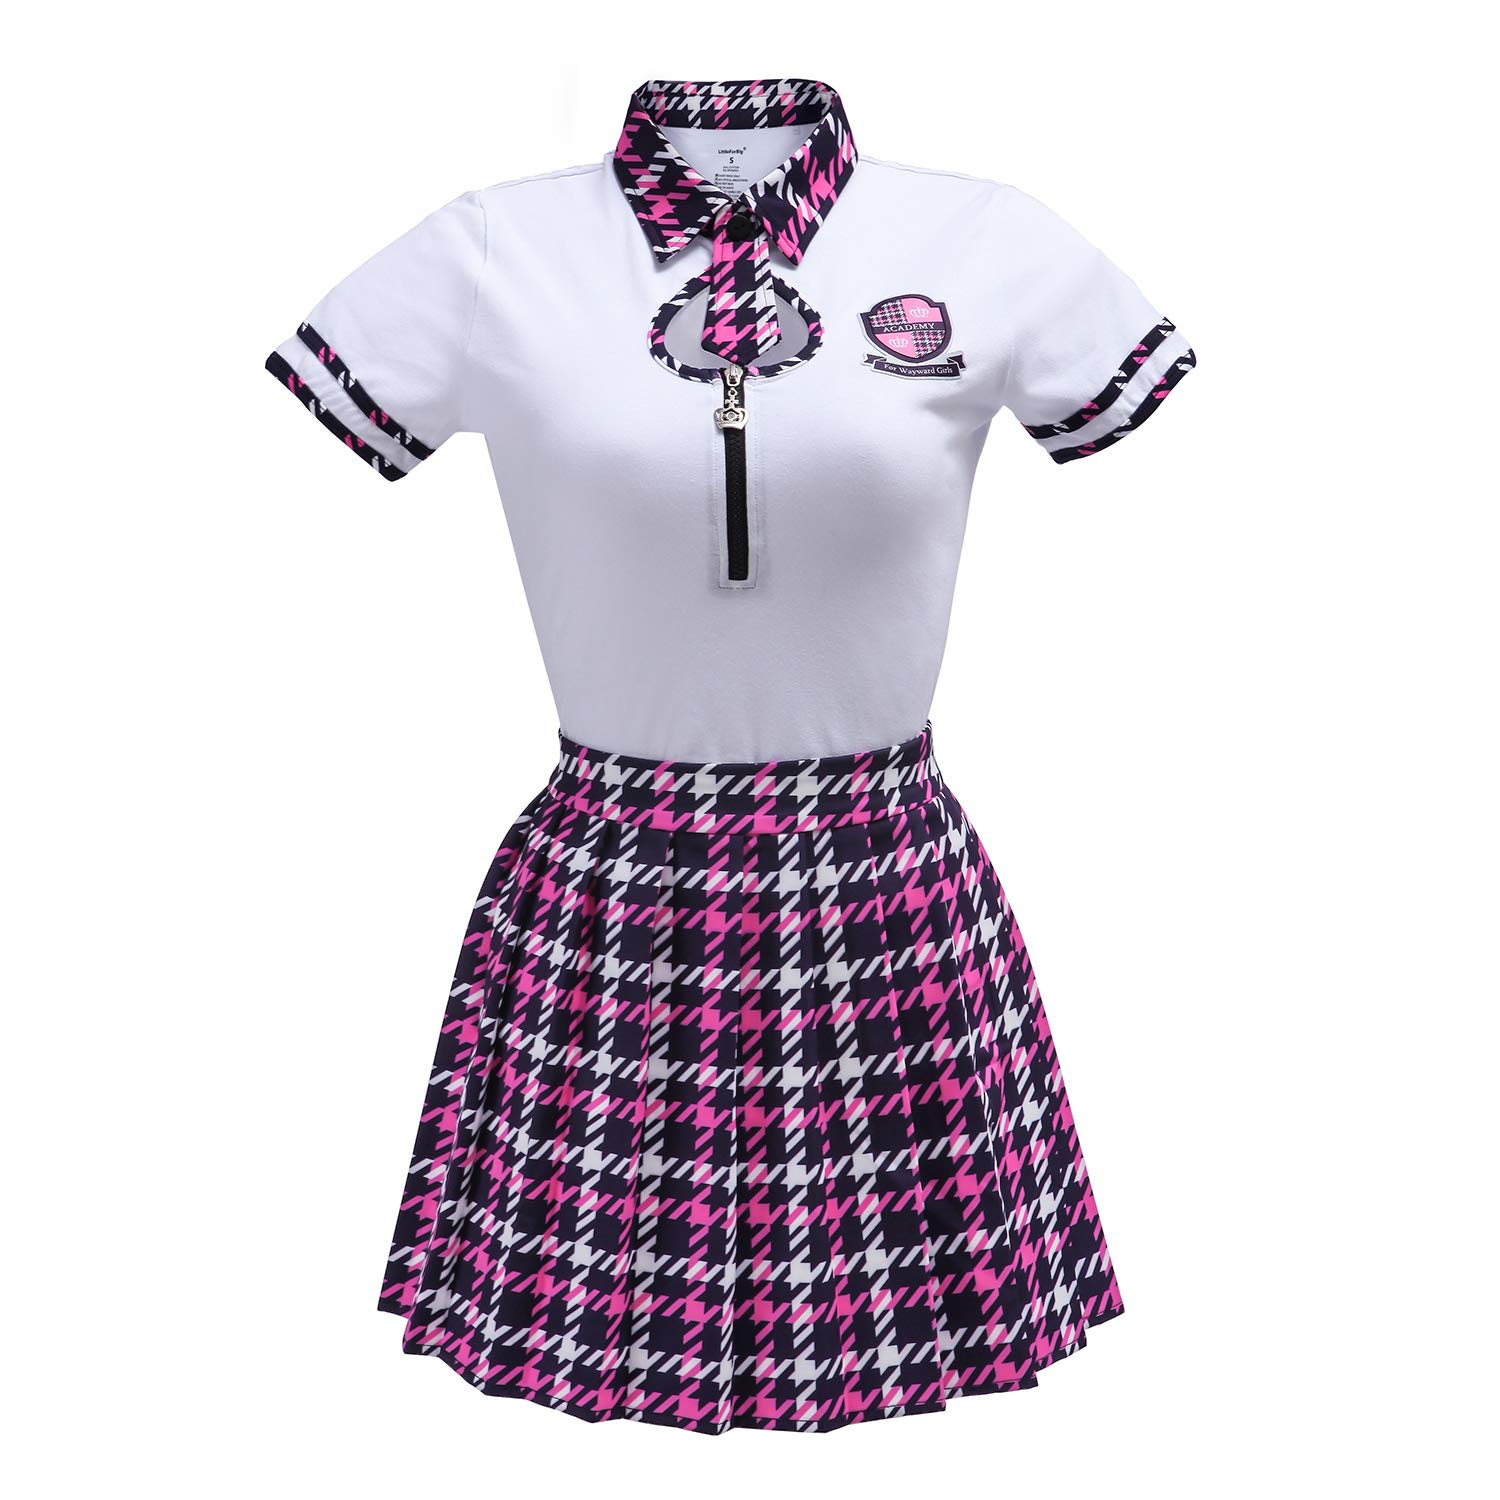 Littleforbig Cotton Romper Onesie Pajamas Bodysuit – Wayward Girls School Uniform